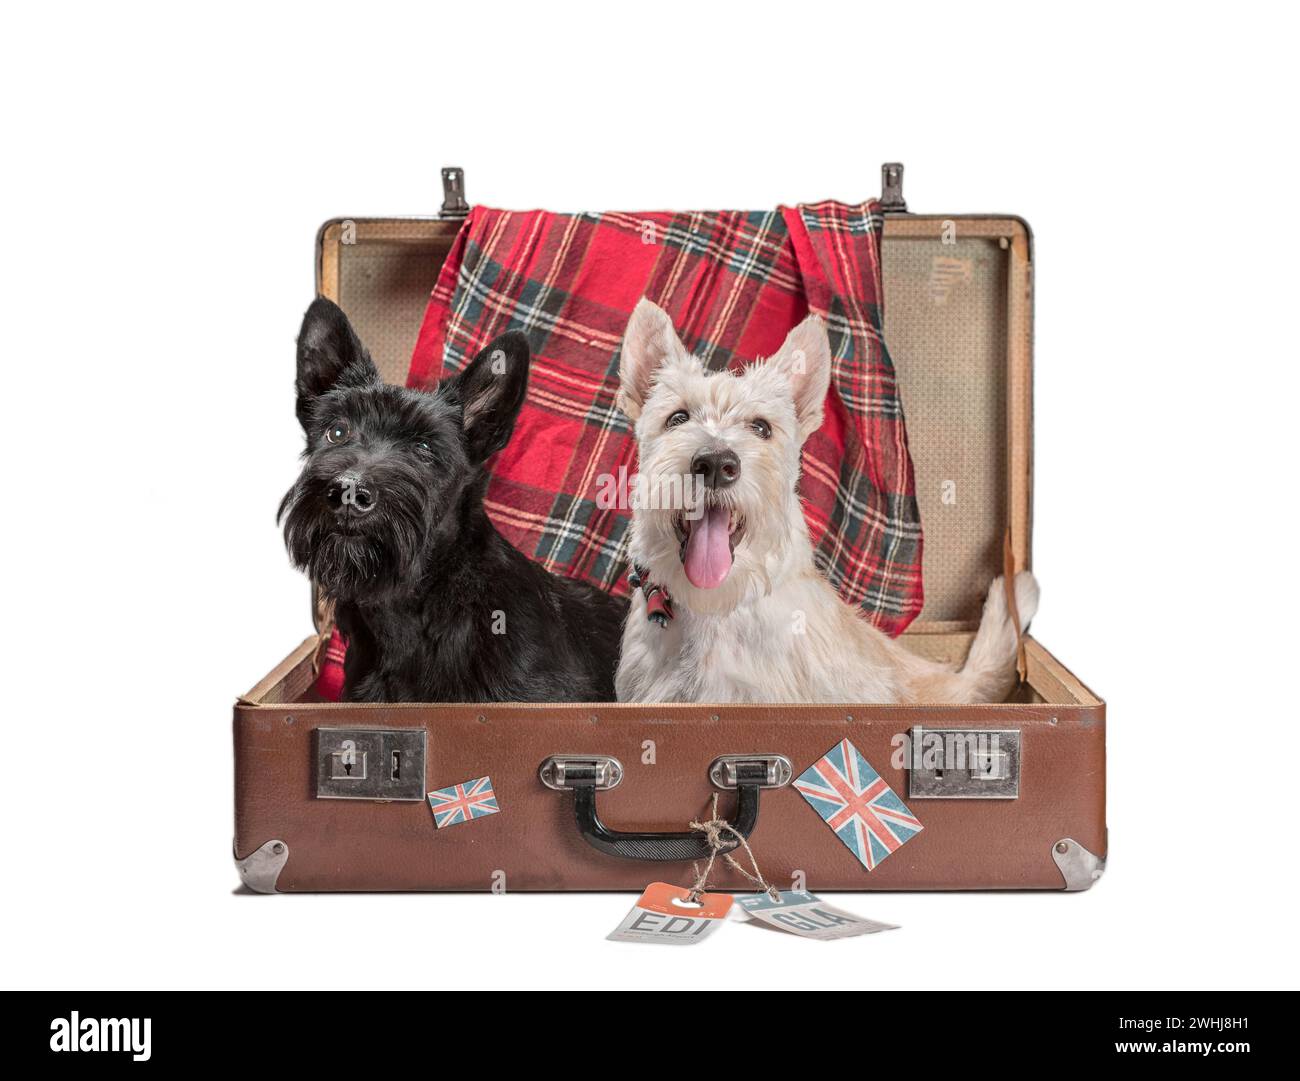 Dos cachorros Scotch terrier sentados en una maleta vintage con etiquetas de aeropuertos escoceses y la bandera británica Foto de stock